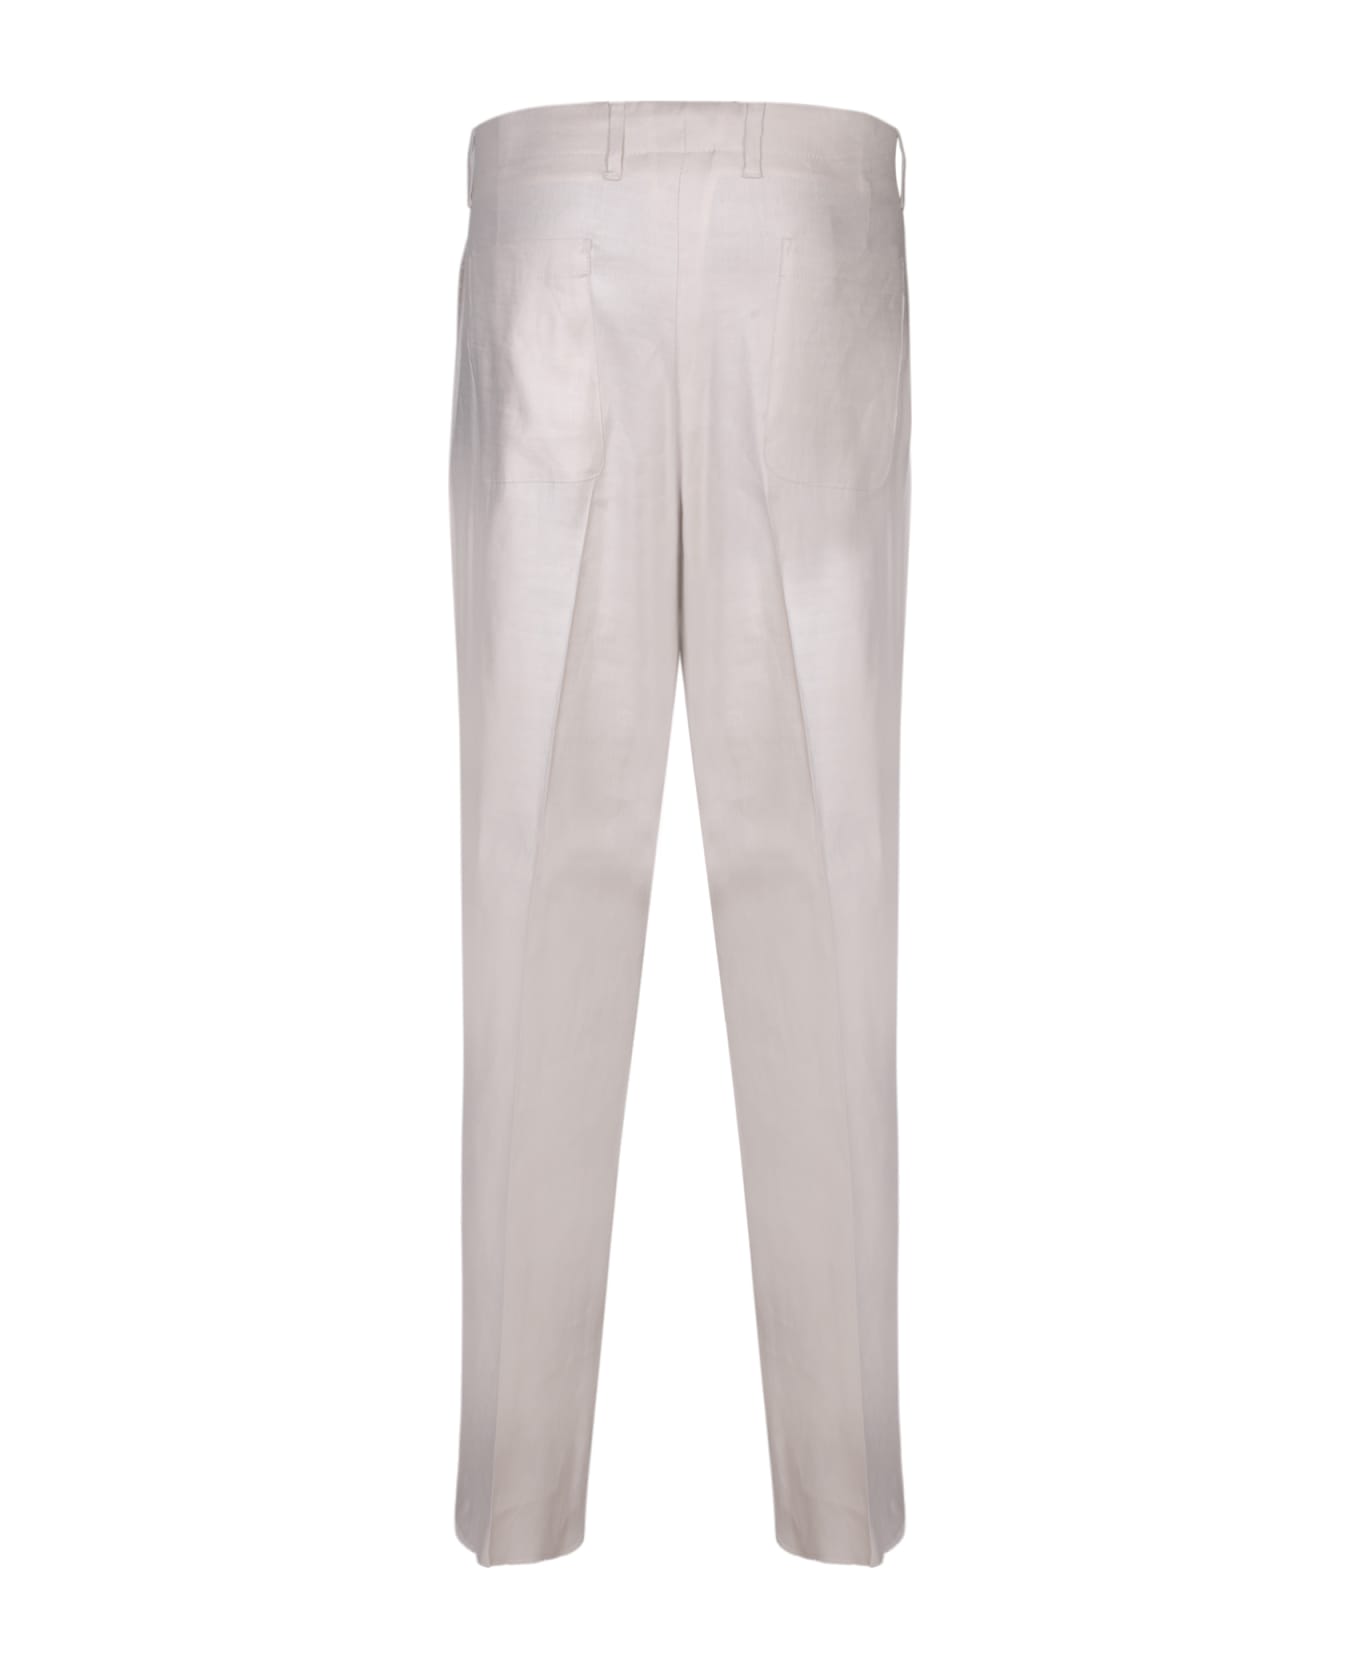 Lardini Atos White Trousers - White